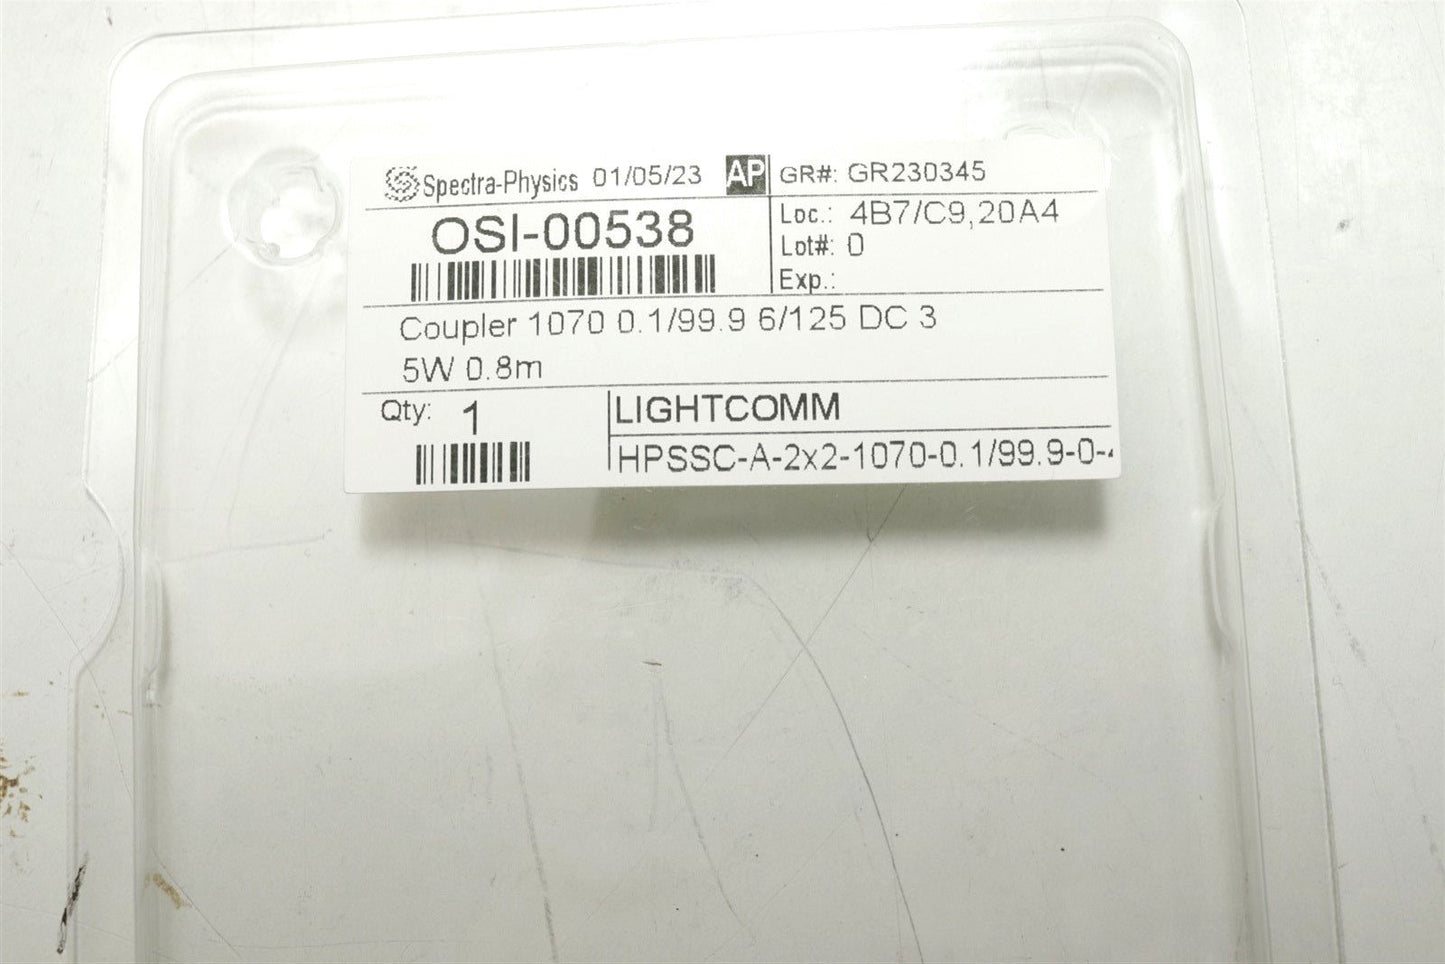 Lightcomm OSI-00538 1070nm Fiber Laser 2x2 High Power Tap Coupler 6/125